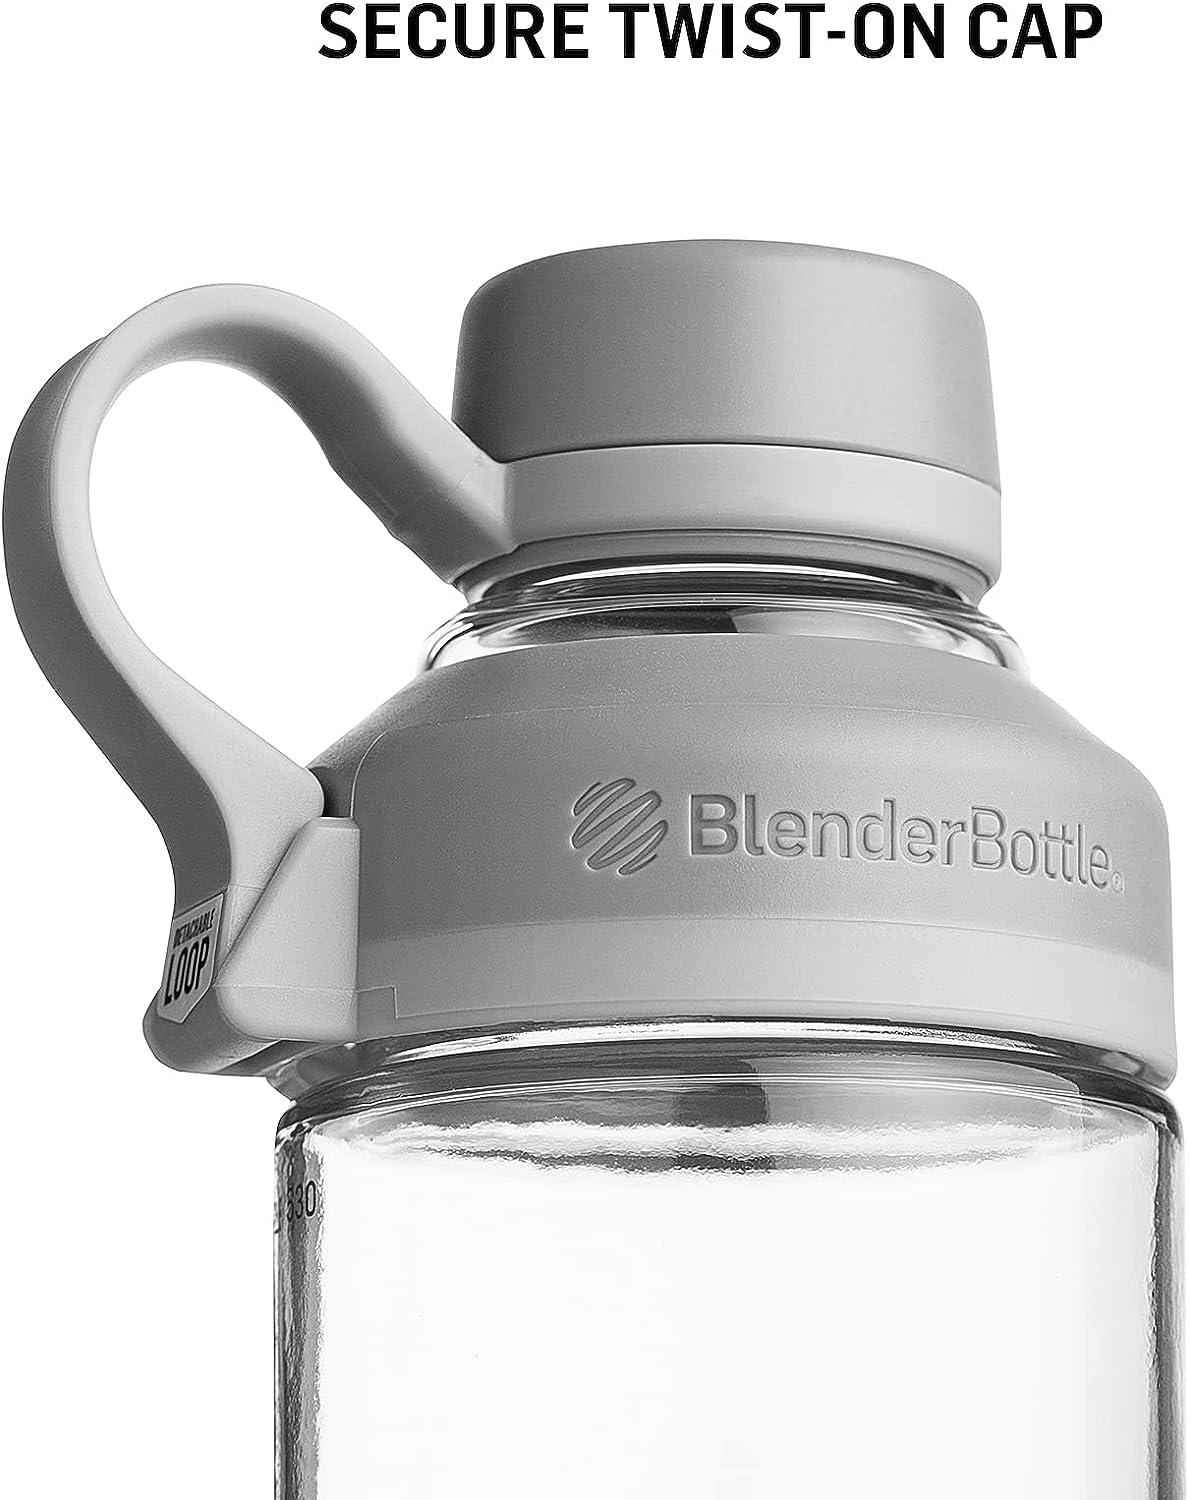 Blender Bottle, Dining, Blender Bottle Mantra 2 Oz Glass Shaker Mixer